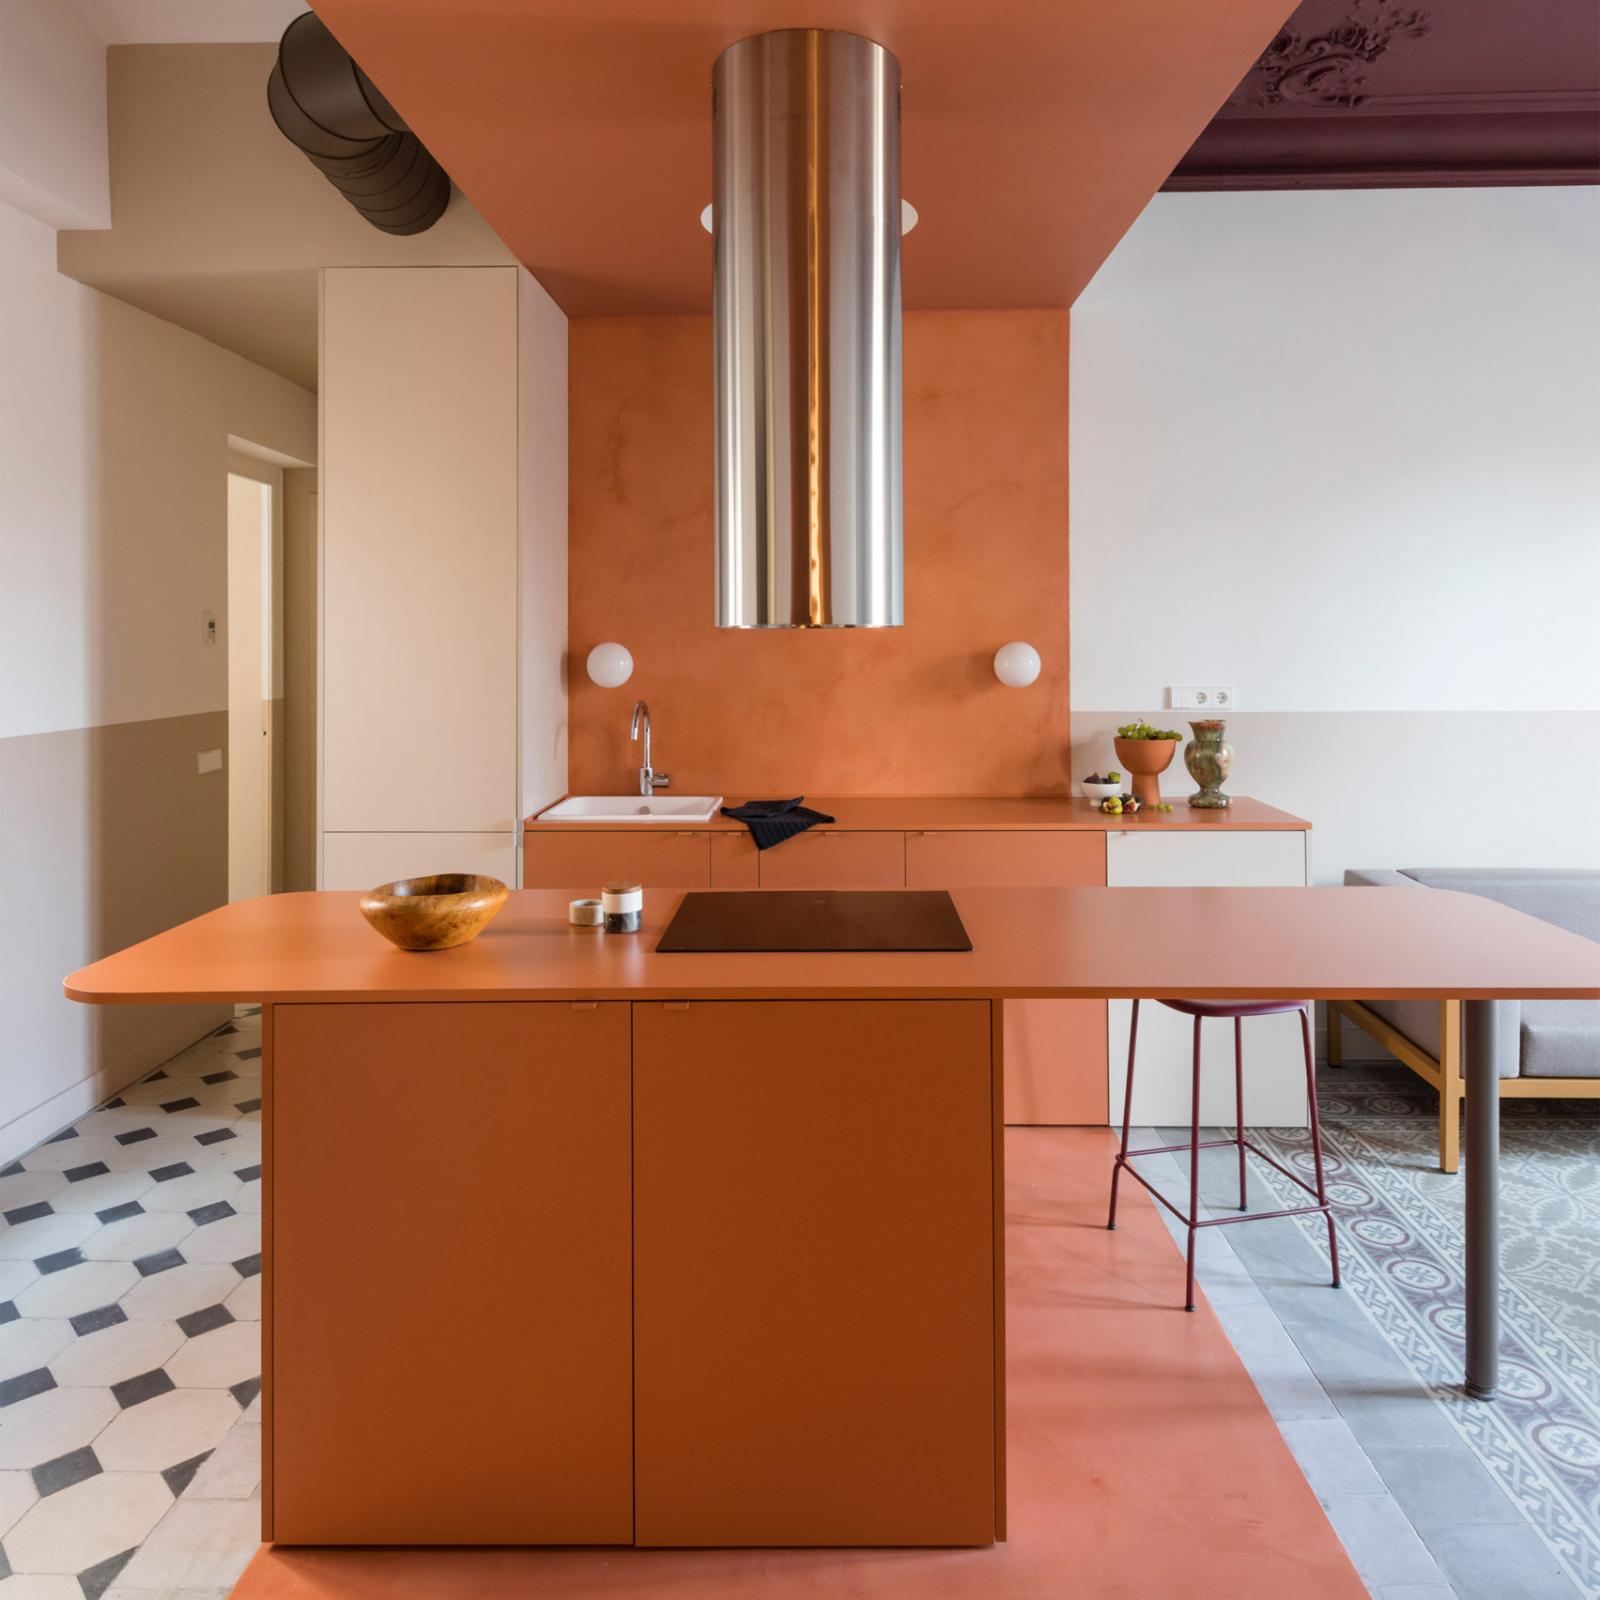 Phòng bếp trong căn hộ nghỉ dưỡng ở Tây Ban Nha với xi măng màu đất nung lót trần, tường và sàn nhà. Những bề mặt ấm áp này được bổ sung bởi tủ bếp dưới, quầy bar ăn sáng trung tâm tương phản với gạch lát sàn hoa văn.